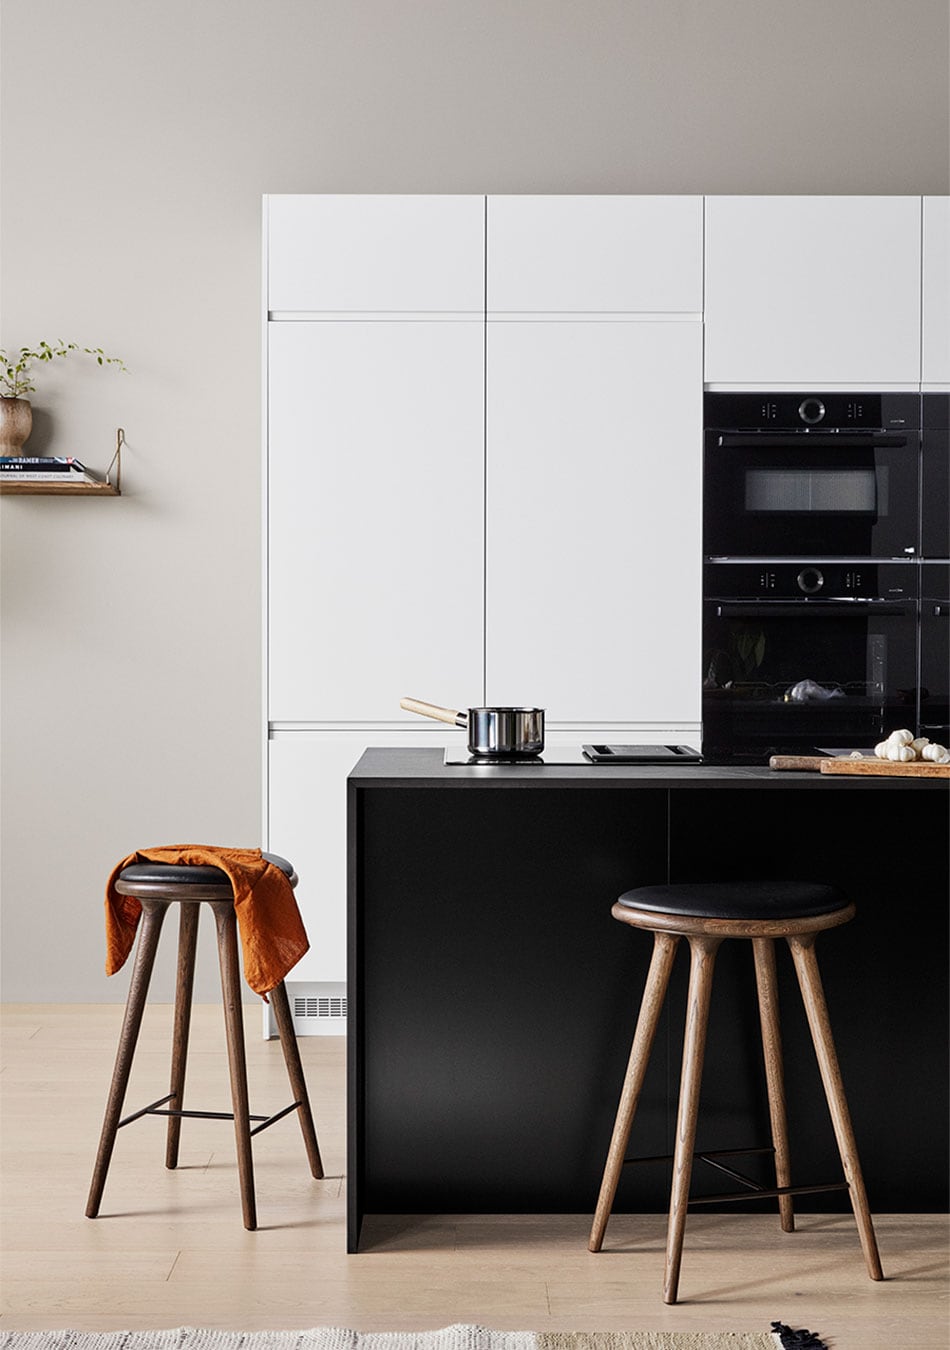 Epoq Pure Matt Black köksö med vita väggskåp, integrerad ugn och kaffemaskin och två barstolar vid köksön